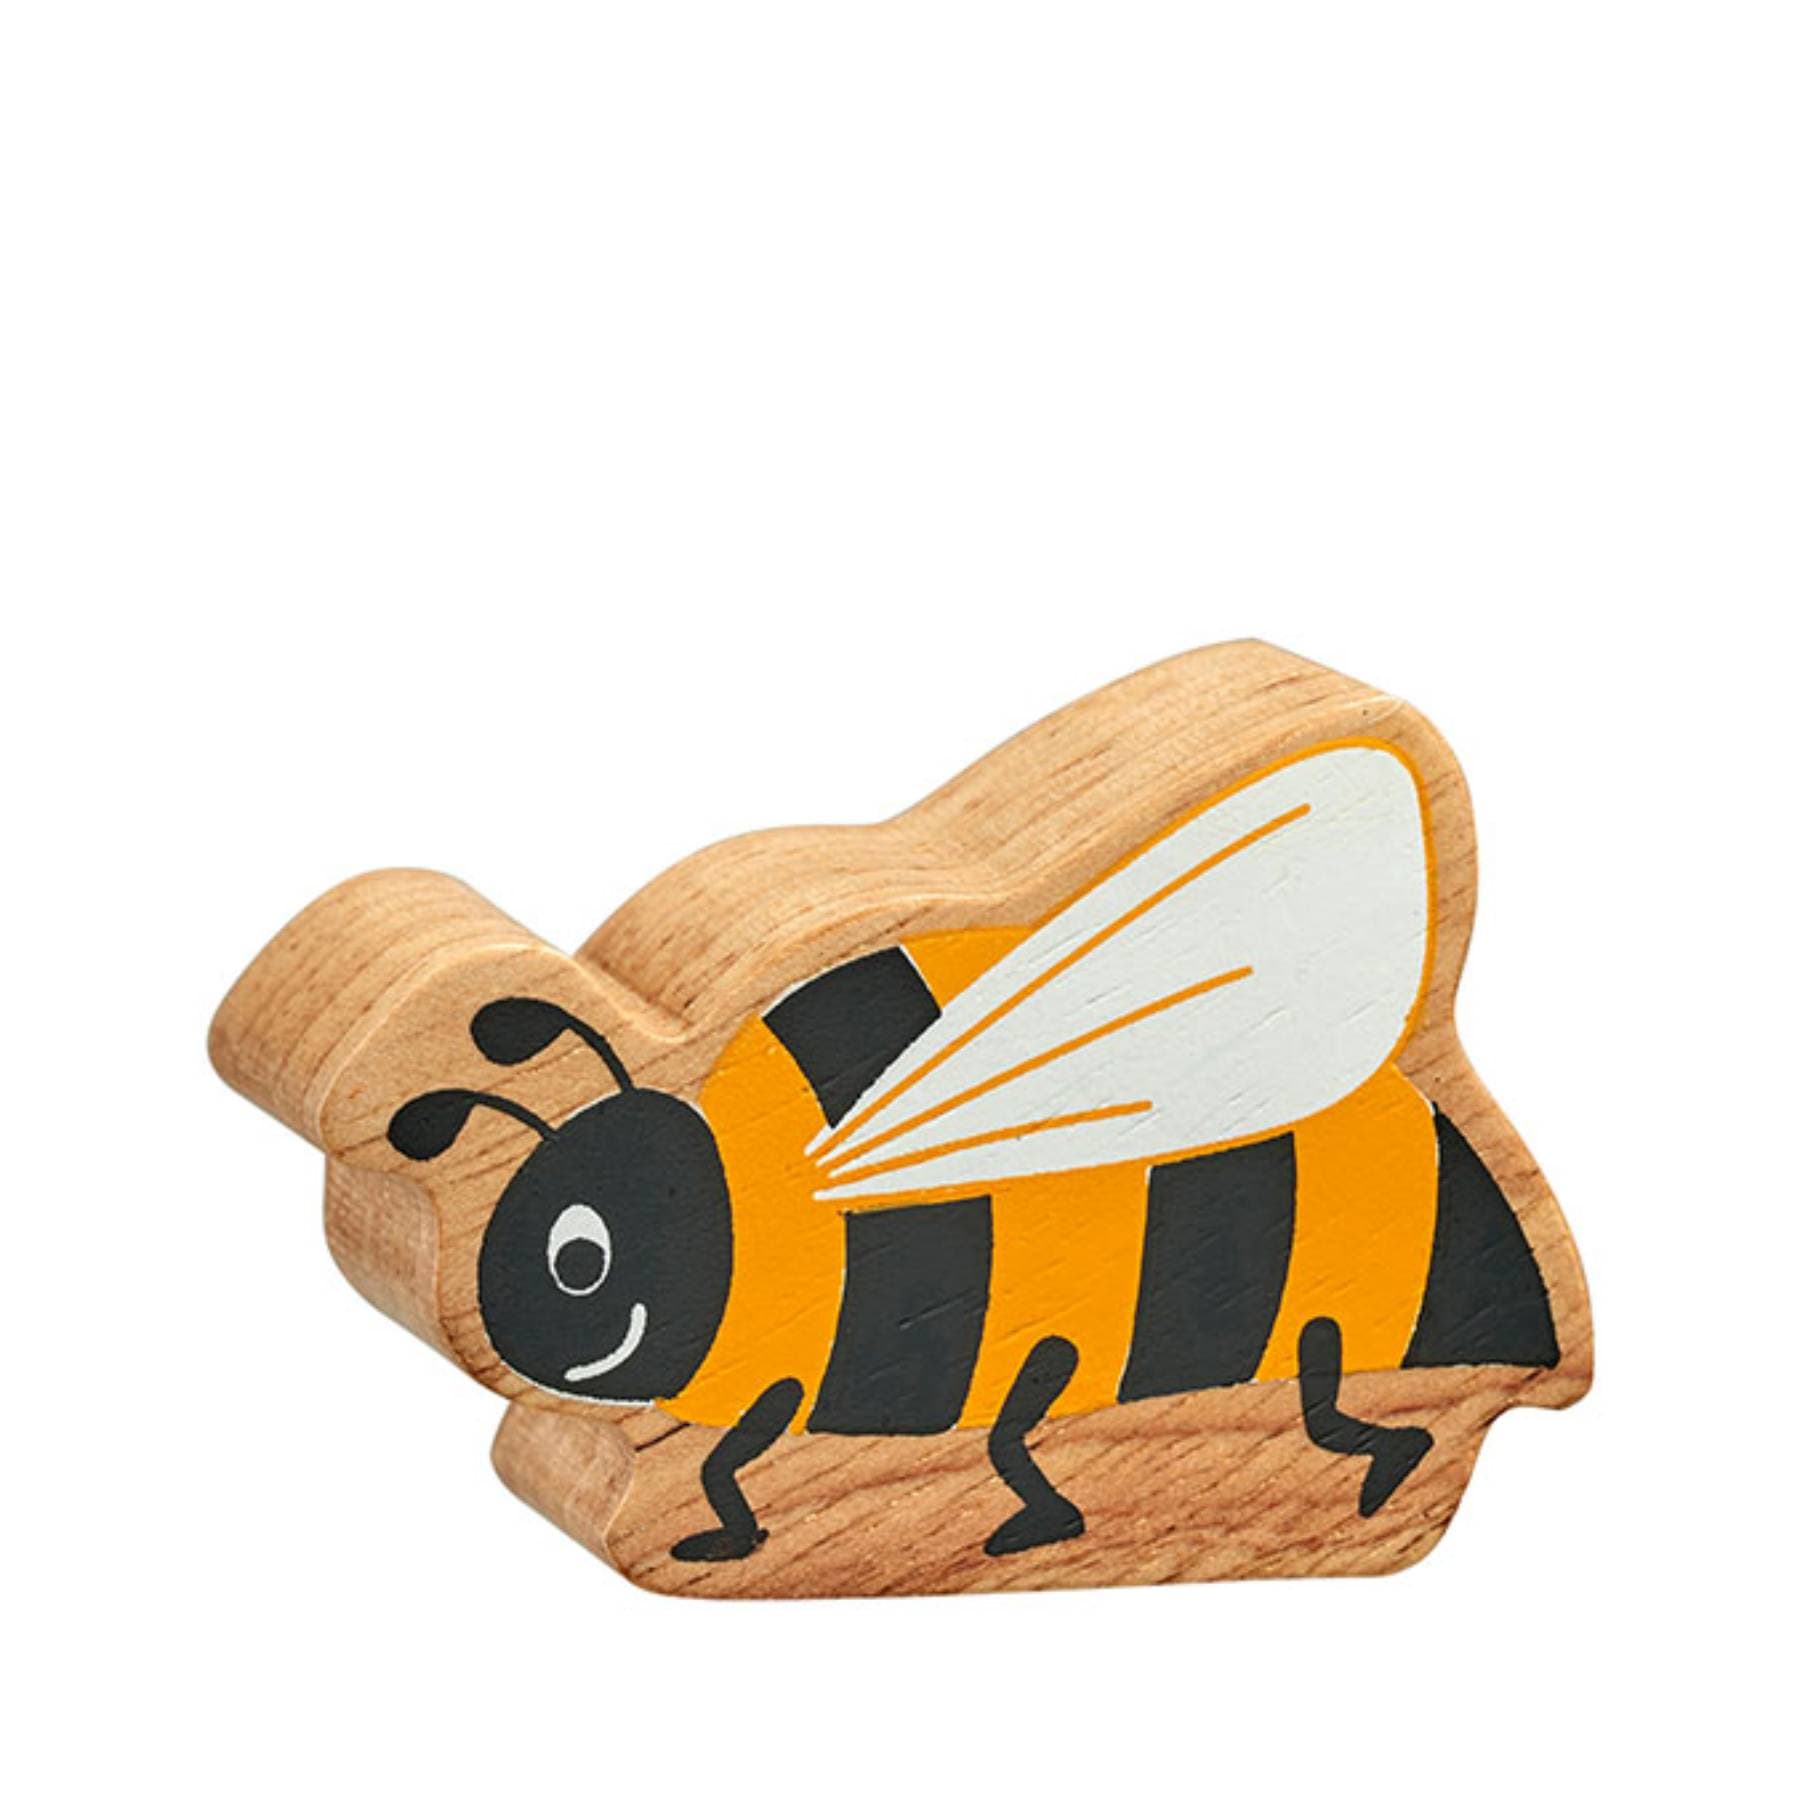 Wooden bee figure